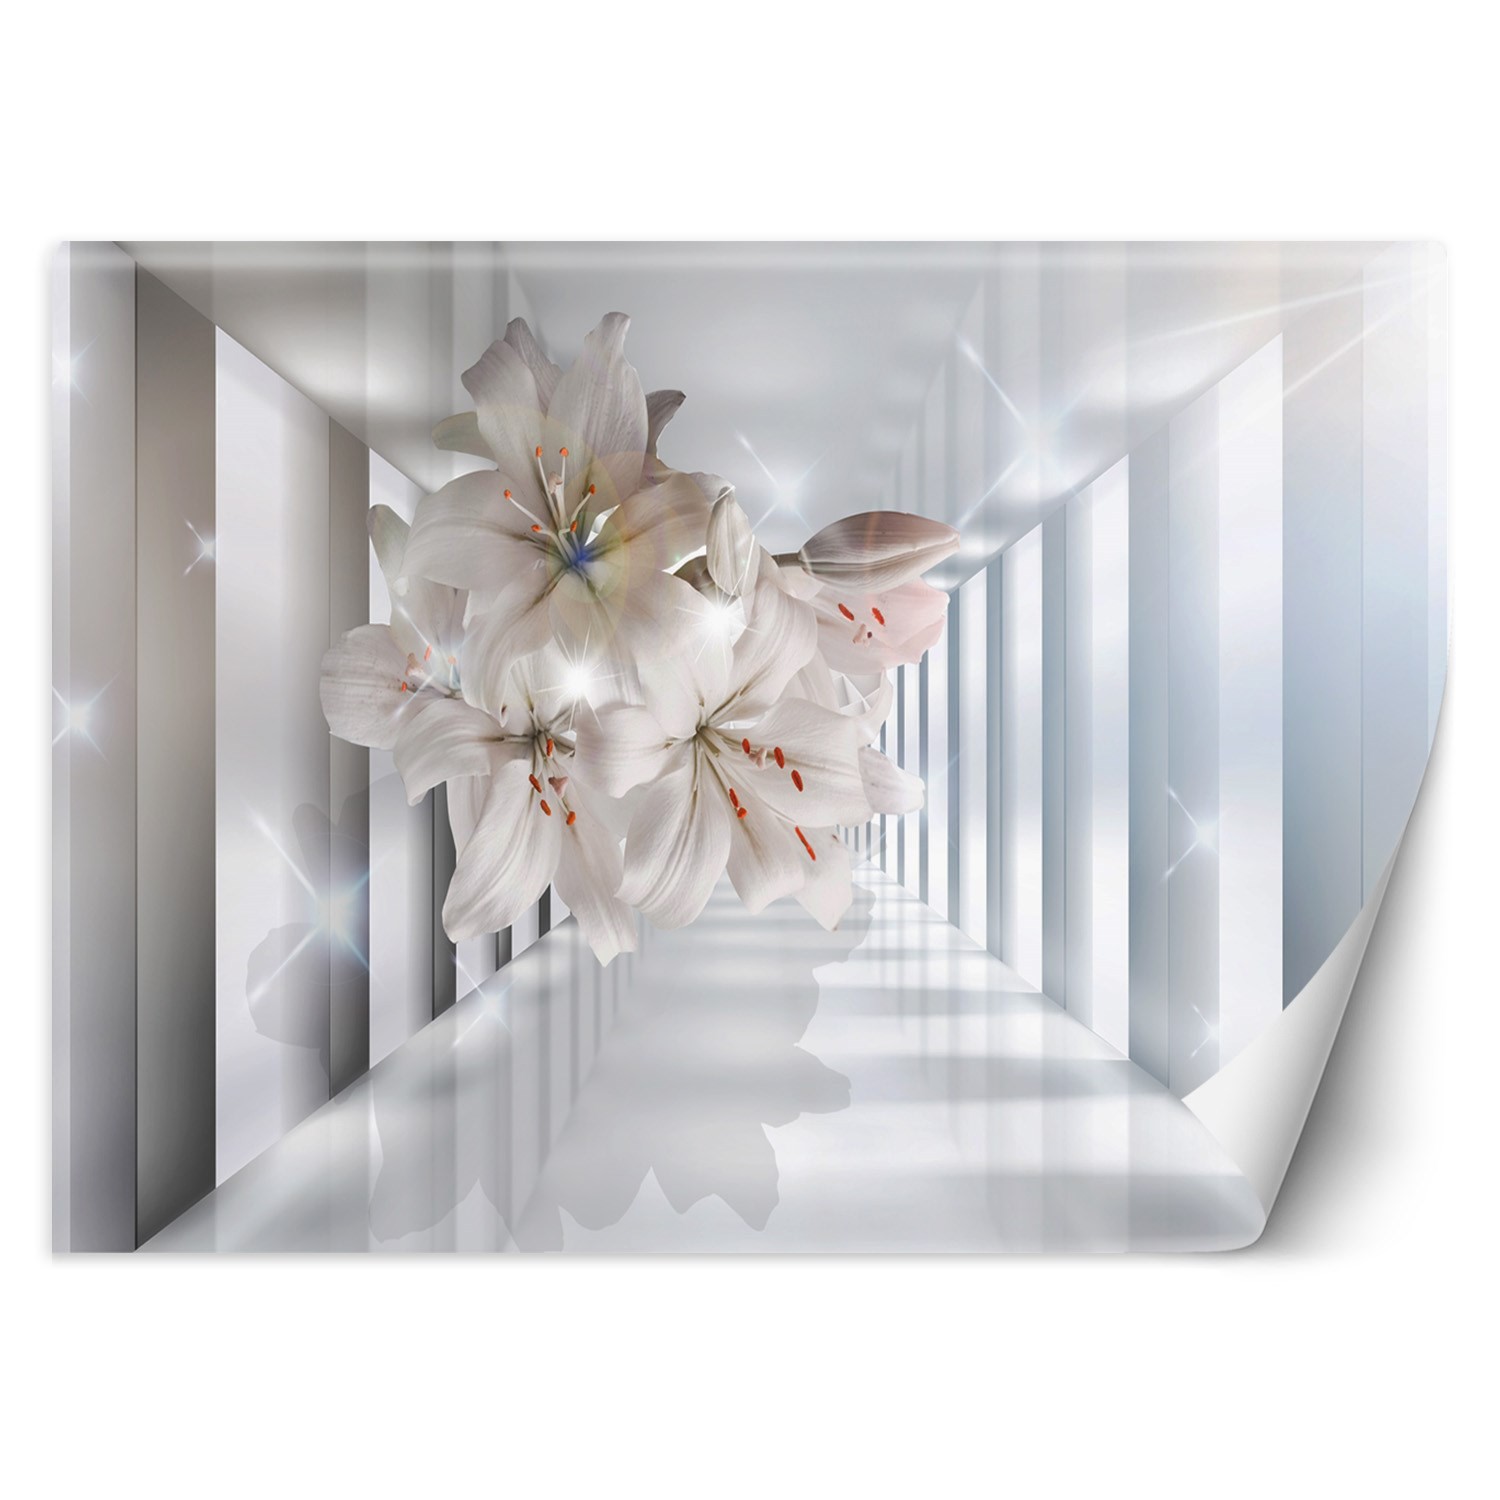 Trend24 – Behang – Bloemen In De Corridor 3D – Behangpapier – Fotobehang 3D – Behang Woonkamer – 350×245 cm – Incl. behanglijm